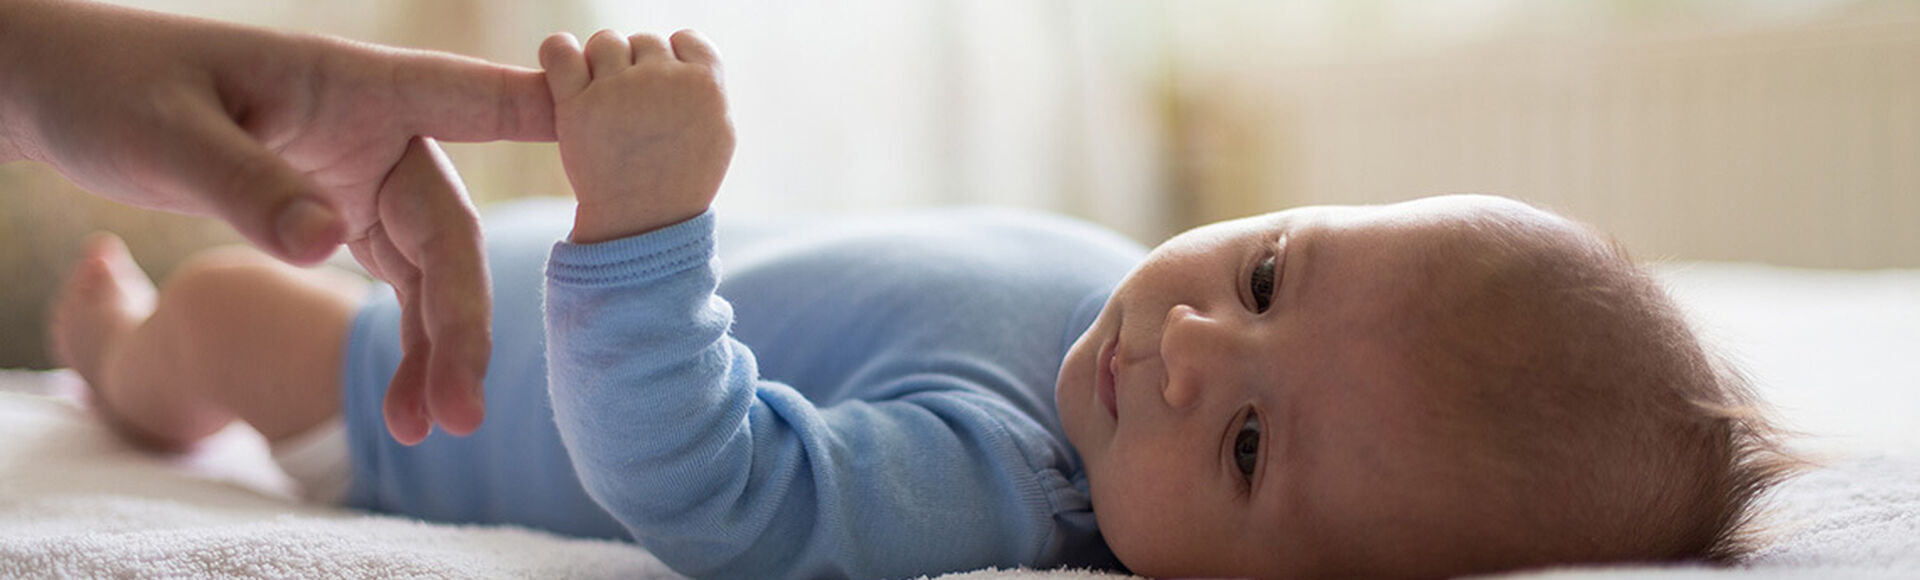 Tu cuerpo y el de tu bebé  durante los dos primeros meses | by Huggies Argentina